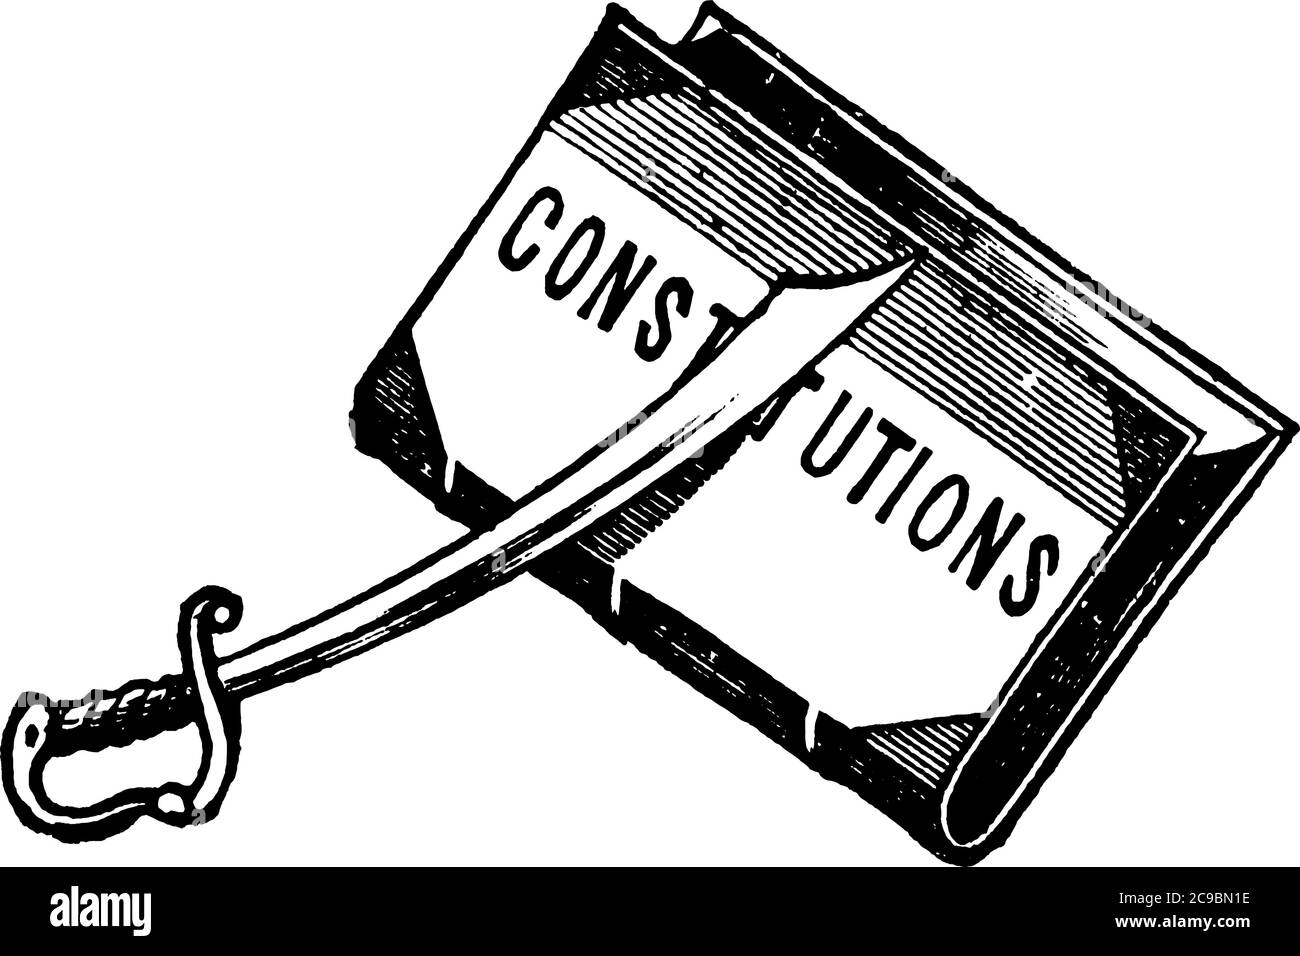 Une illustration avec une épée placée sur un livre avec le nom, 'CONSTITUTIOn', sur sa couverture. La Constitution est un ensemble de principes fondamentaux accordi Illustration de Vecteur